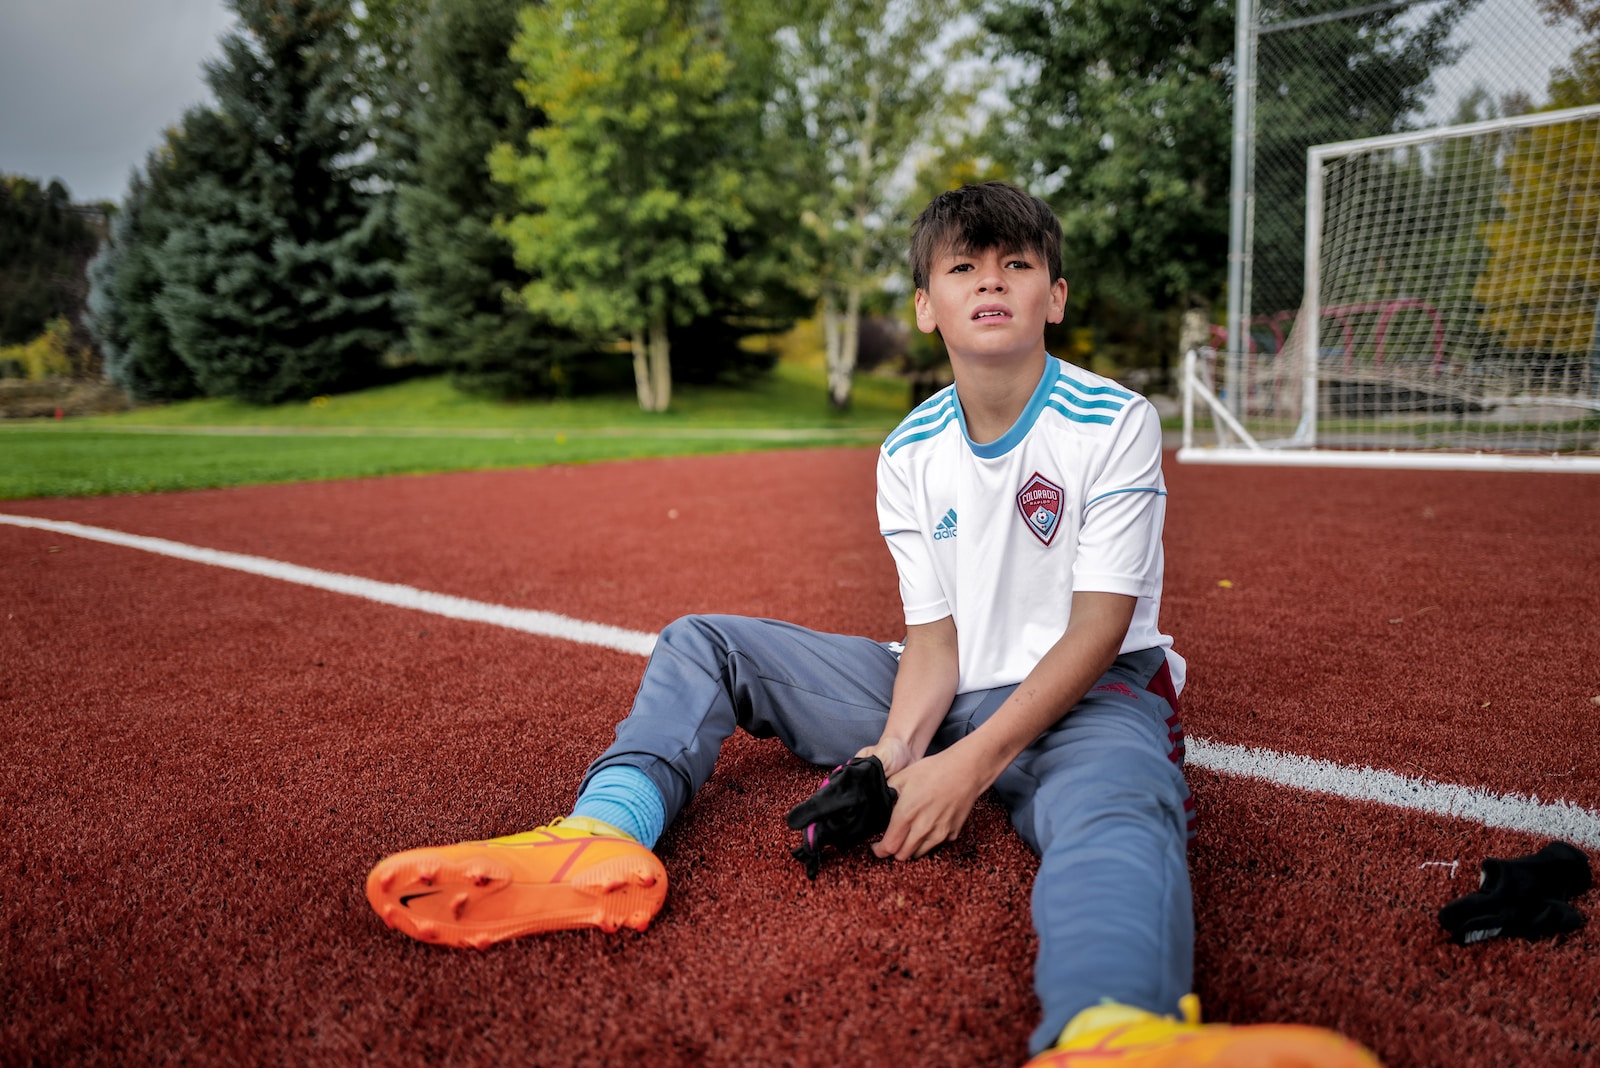 a boy sitting on a baseball field